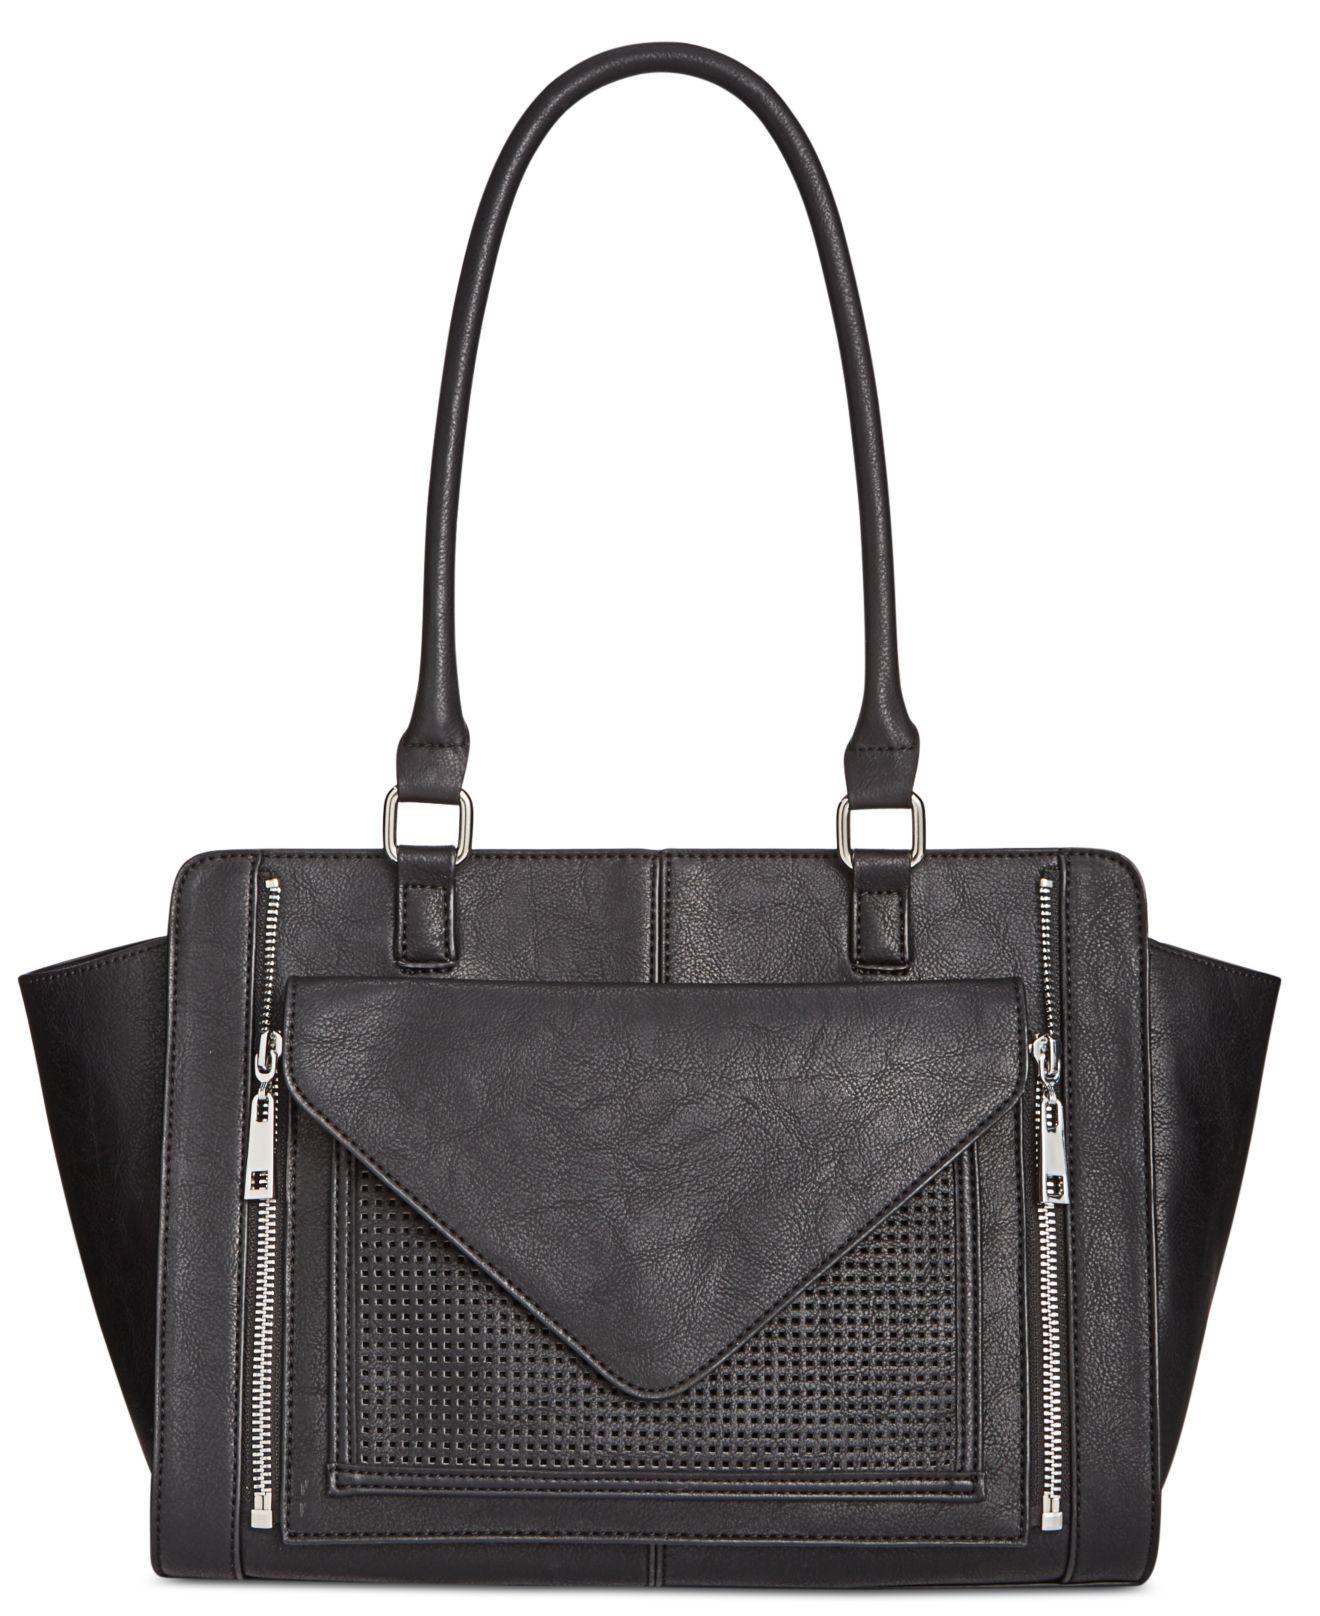 Lyst - Inc International Concepts Debie Bag In Bag Tote in Black